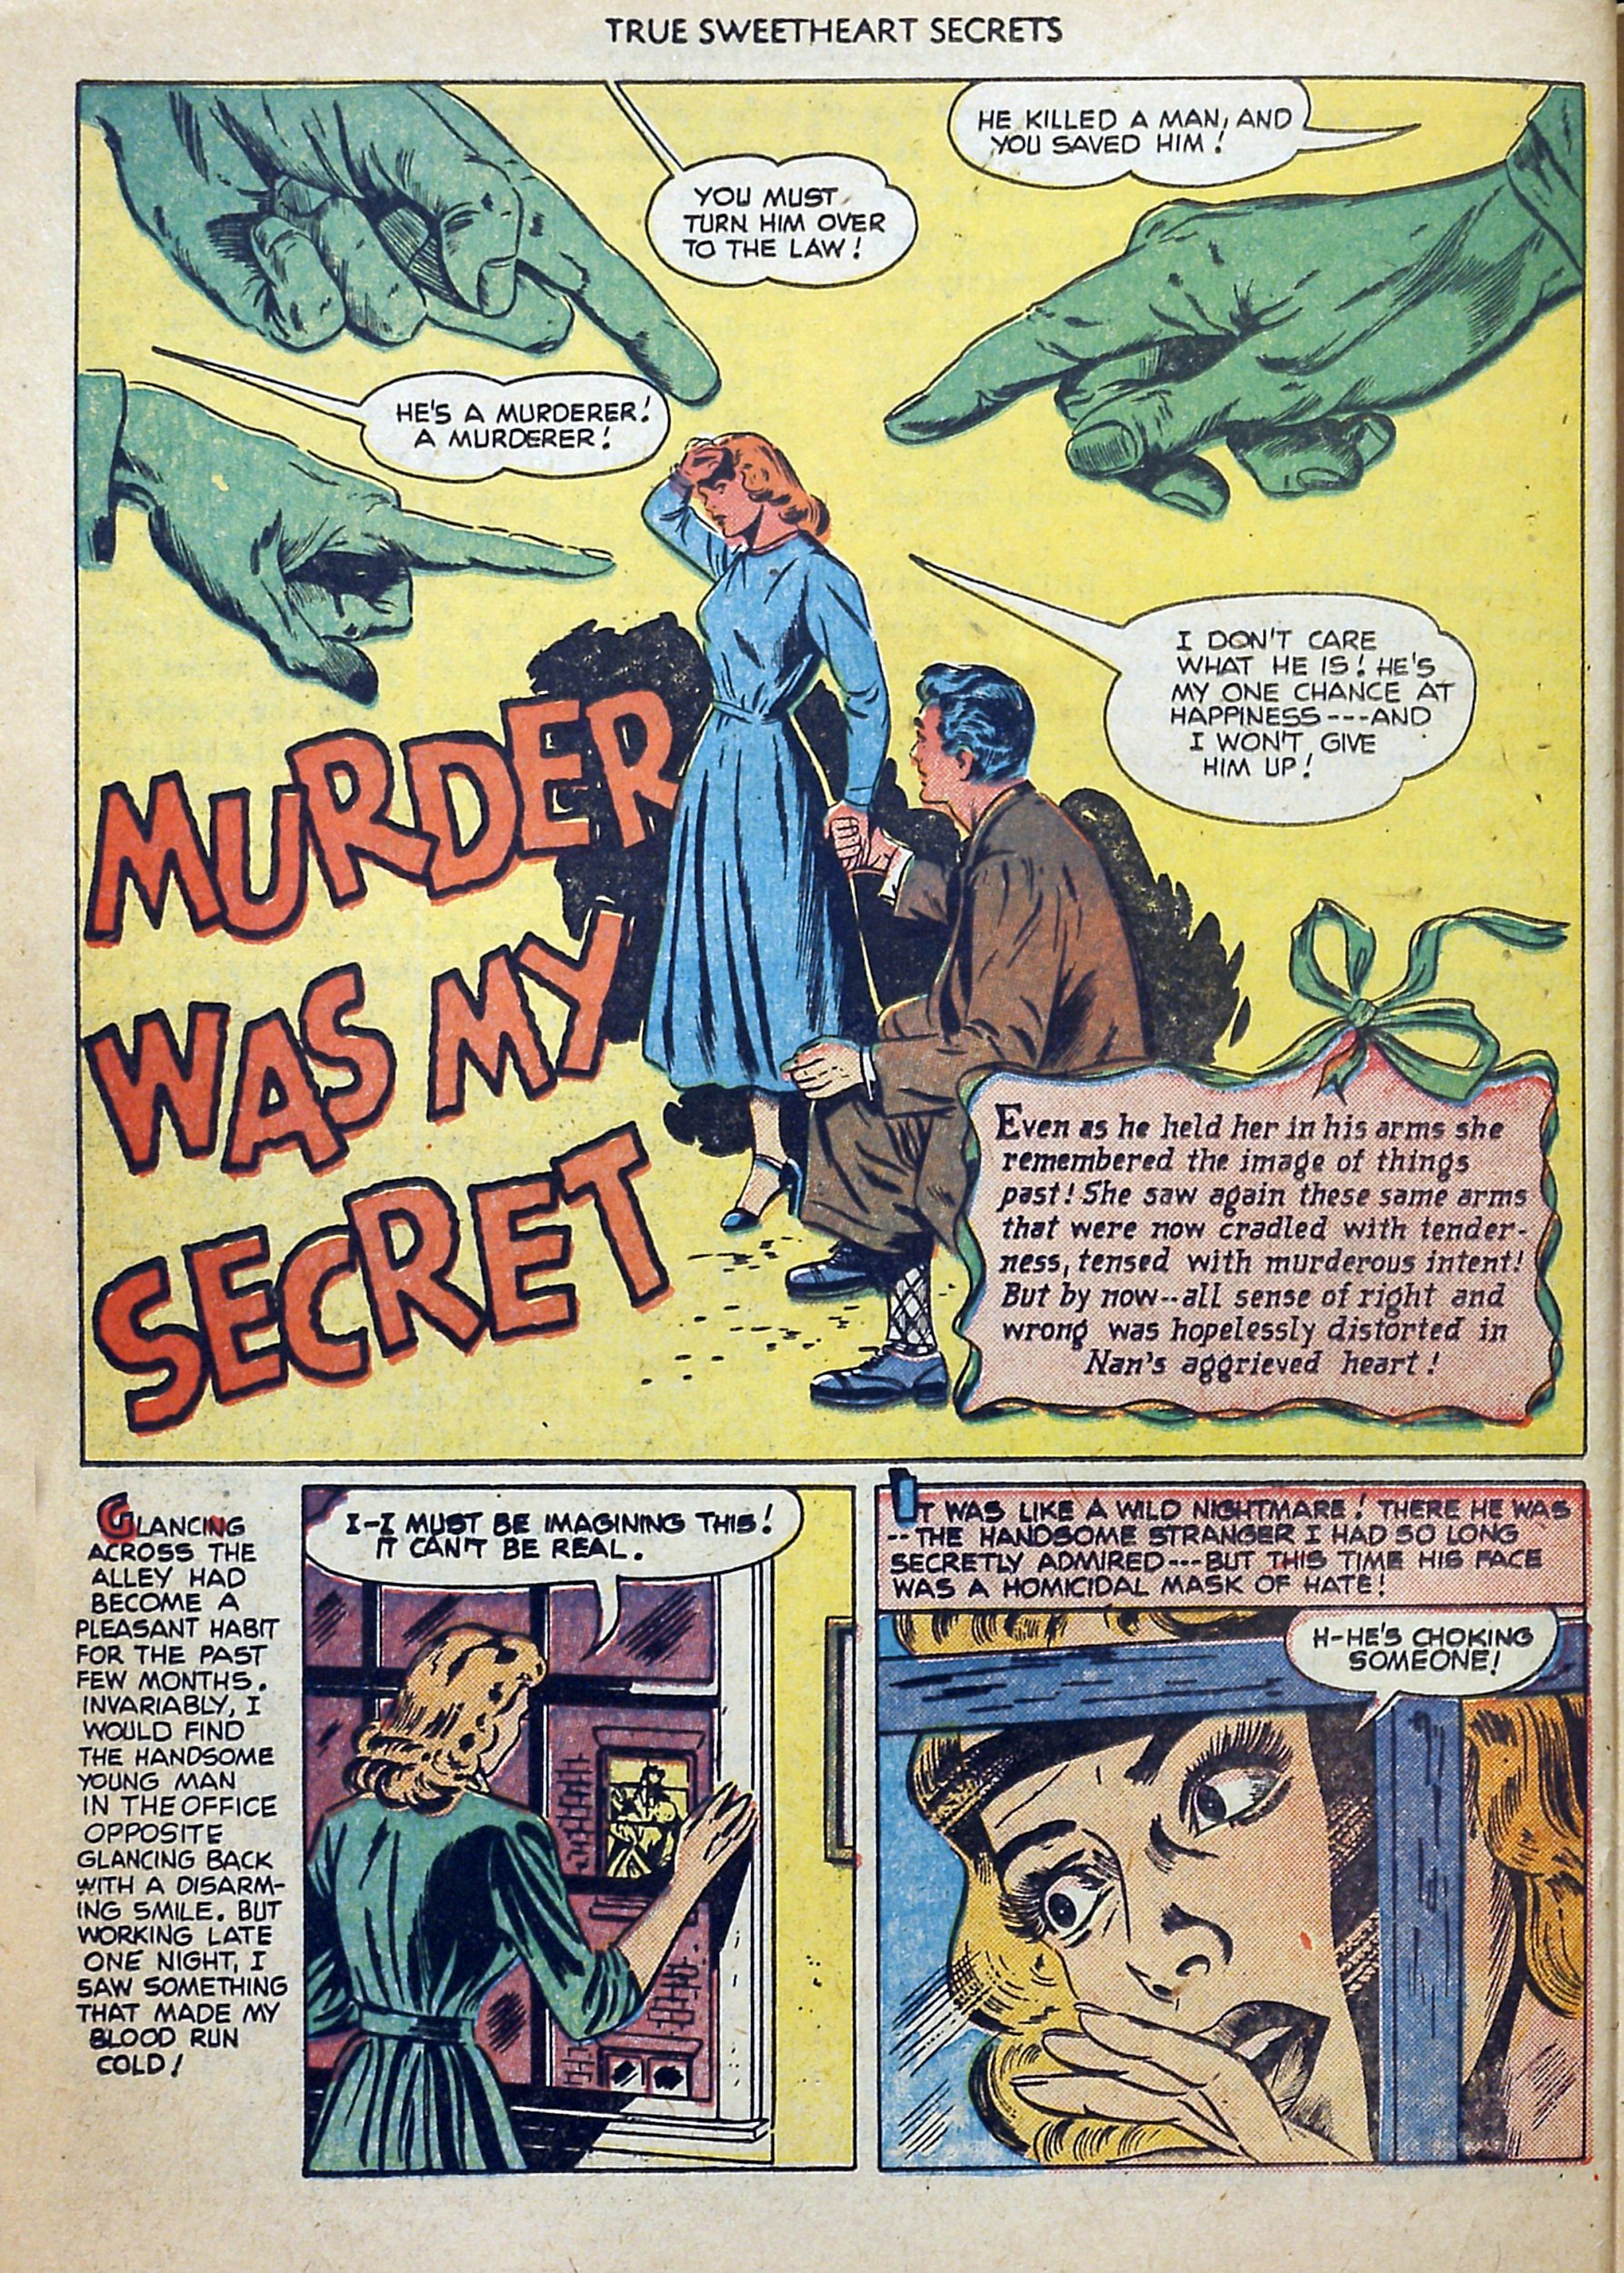 Read online True Sweetheart Secrets comic -  Issue #4 - 26